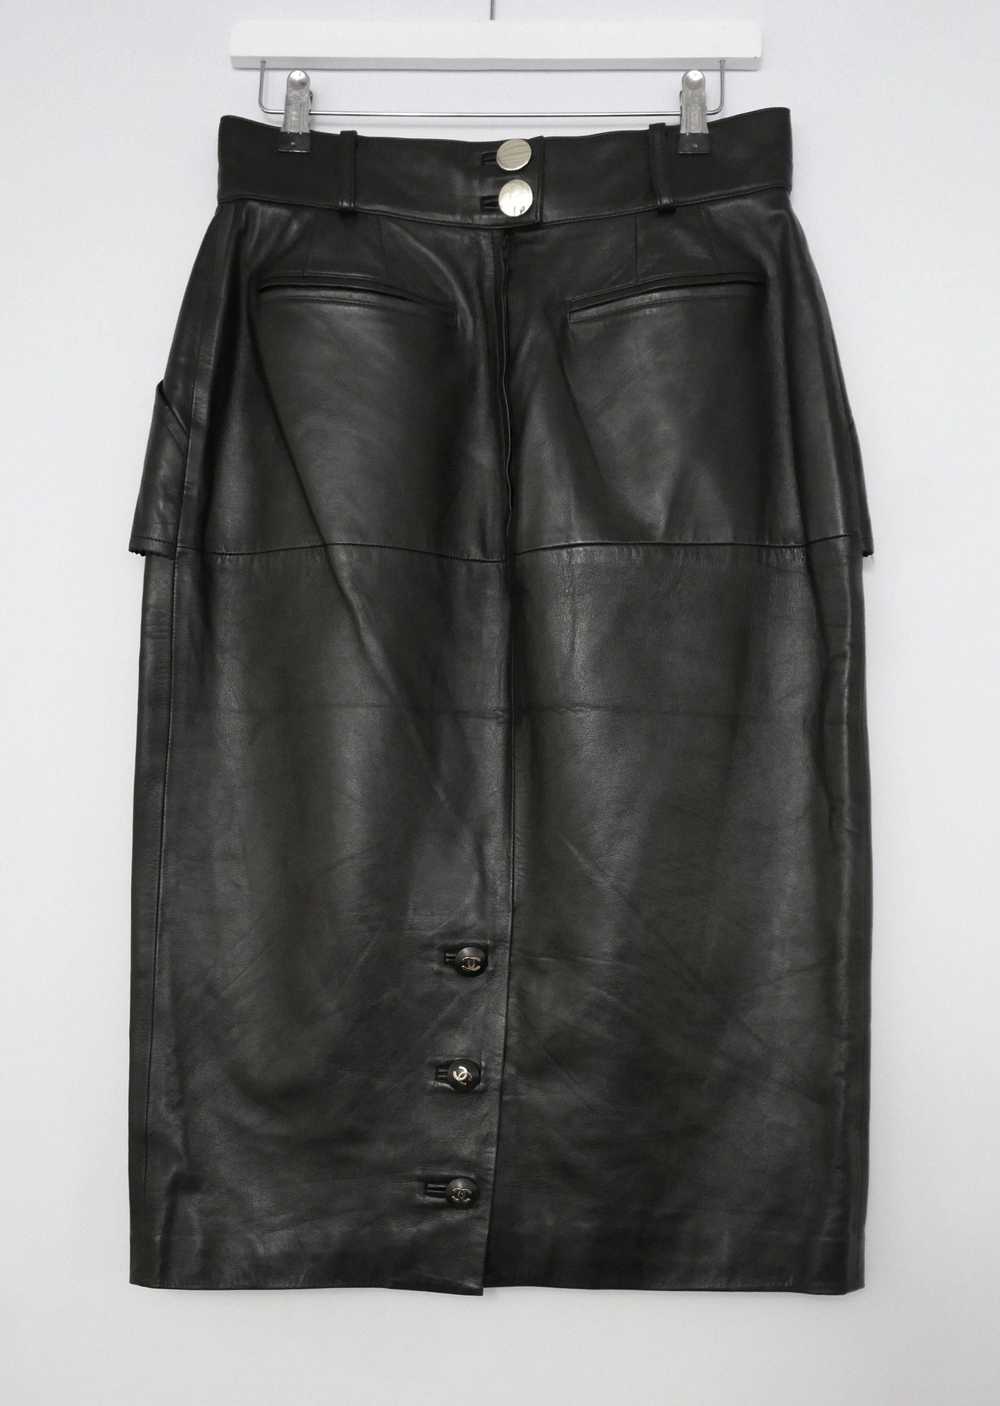 Chanel 90s Vintage Black Leather Skirt - image 6